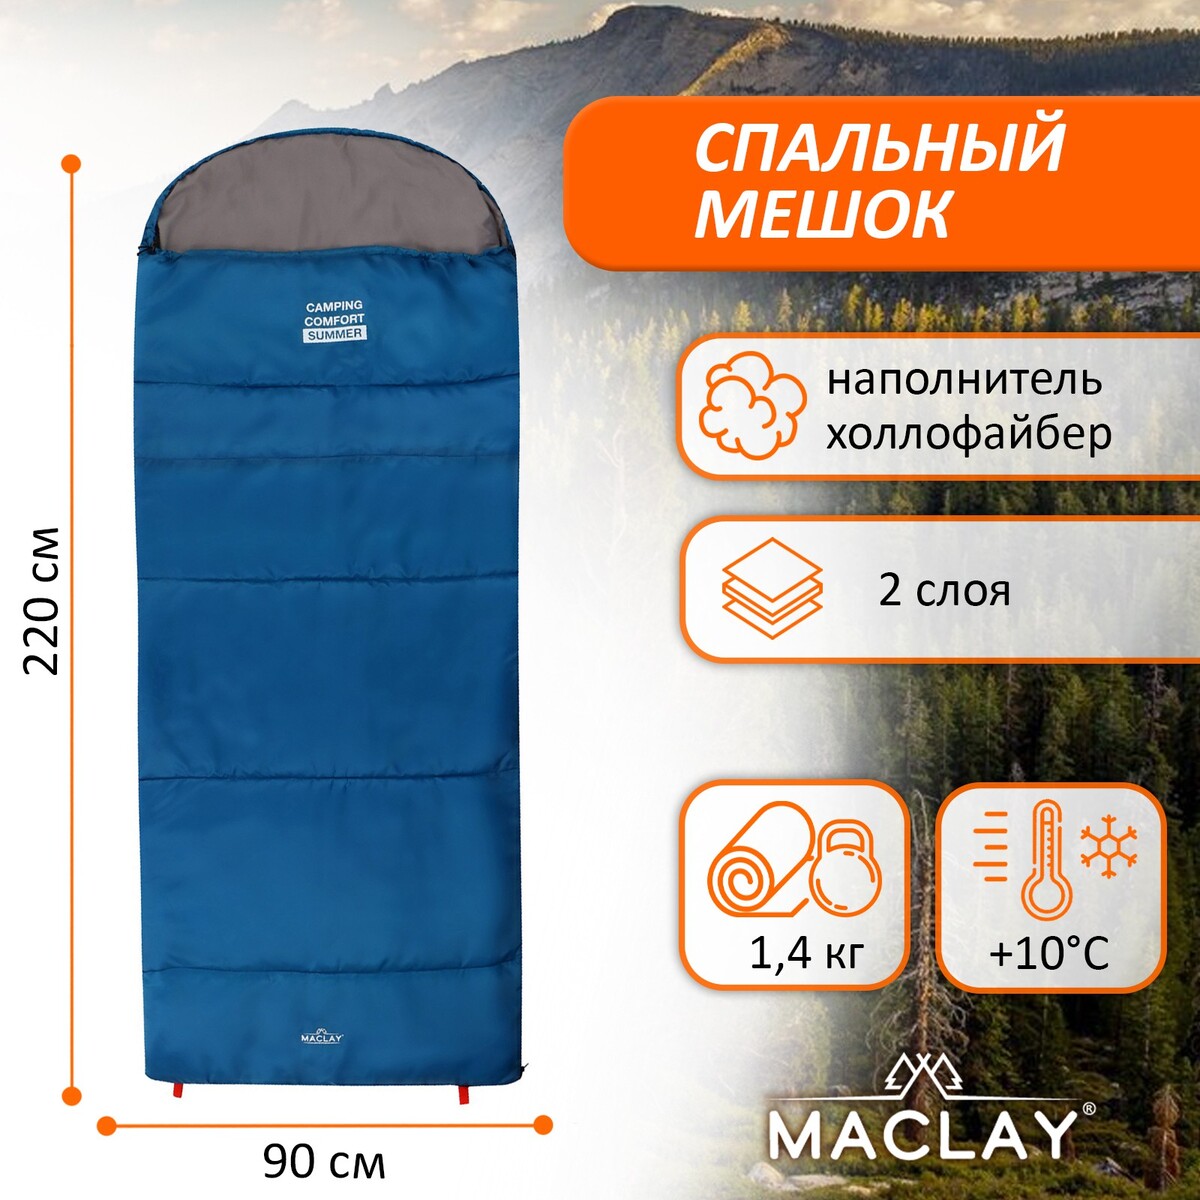 Спальный мешок maclay camping comfort summer, 2 слоя, левый, с подголовником, 220х90 см, +10/+25°с summer men